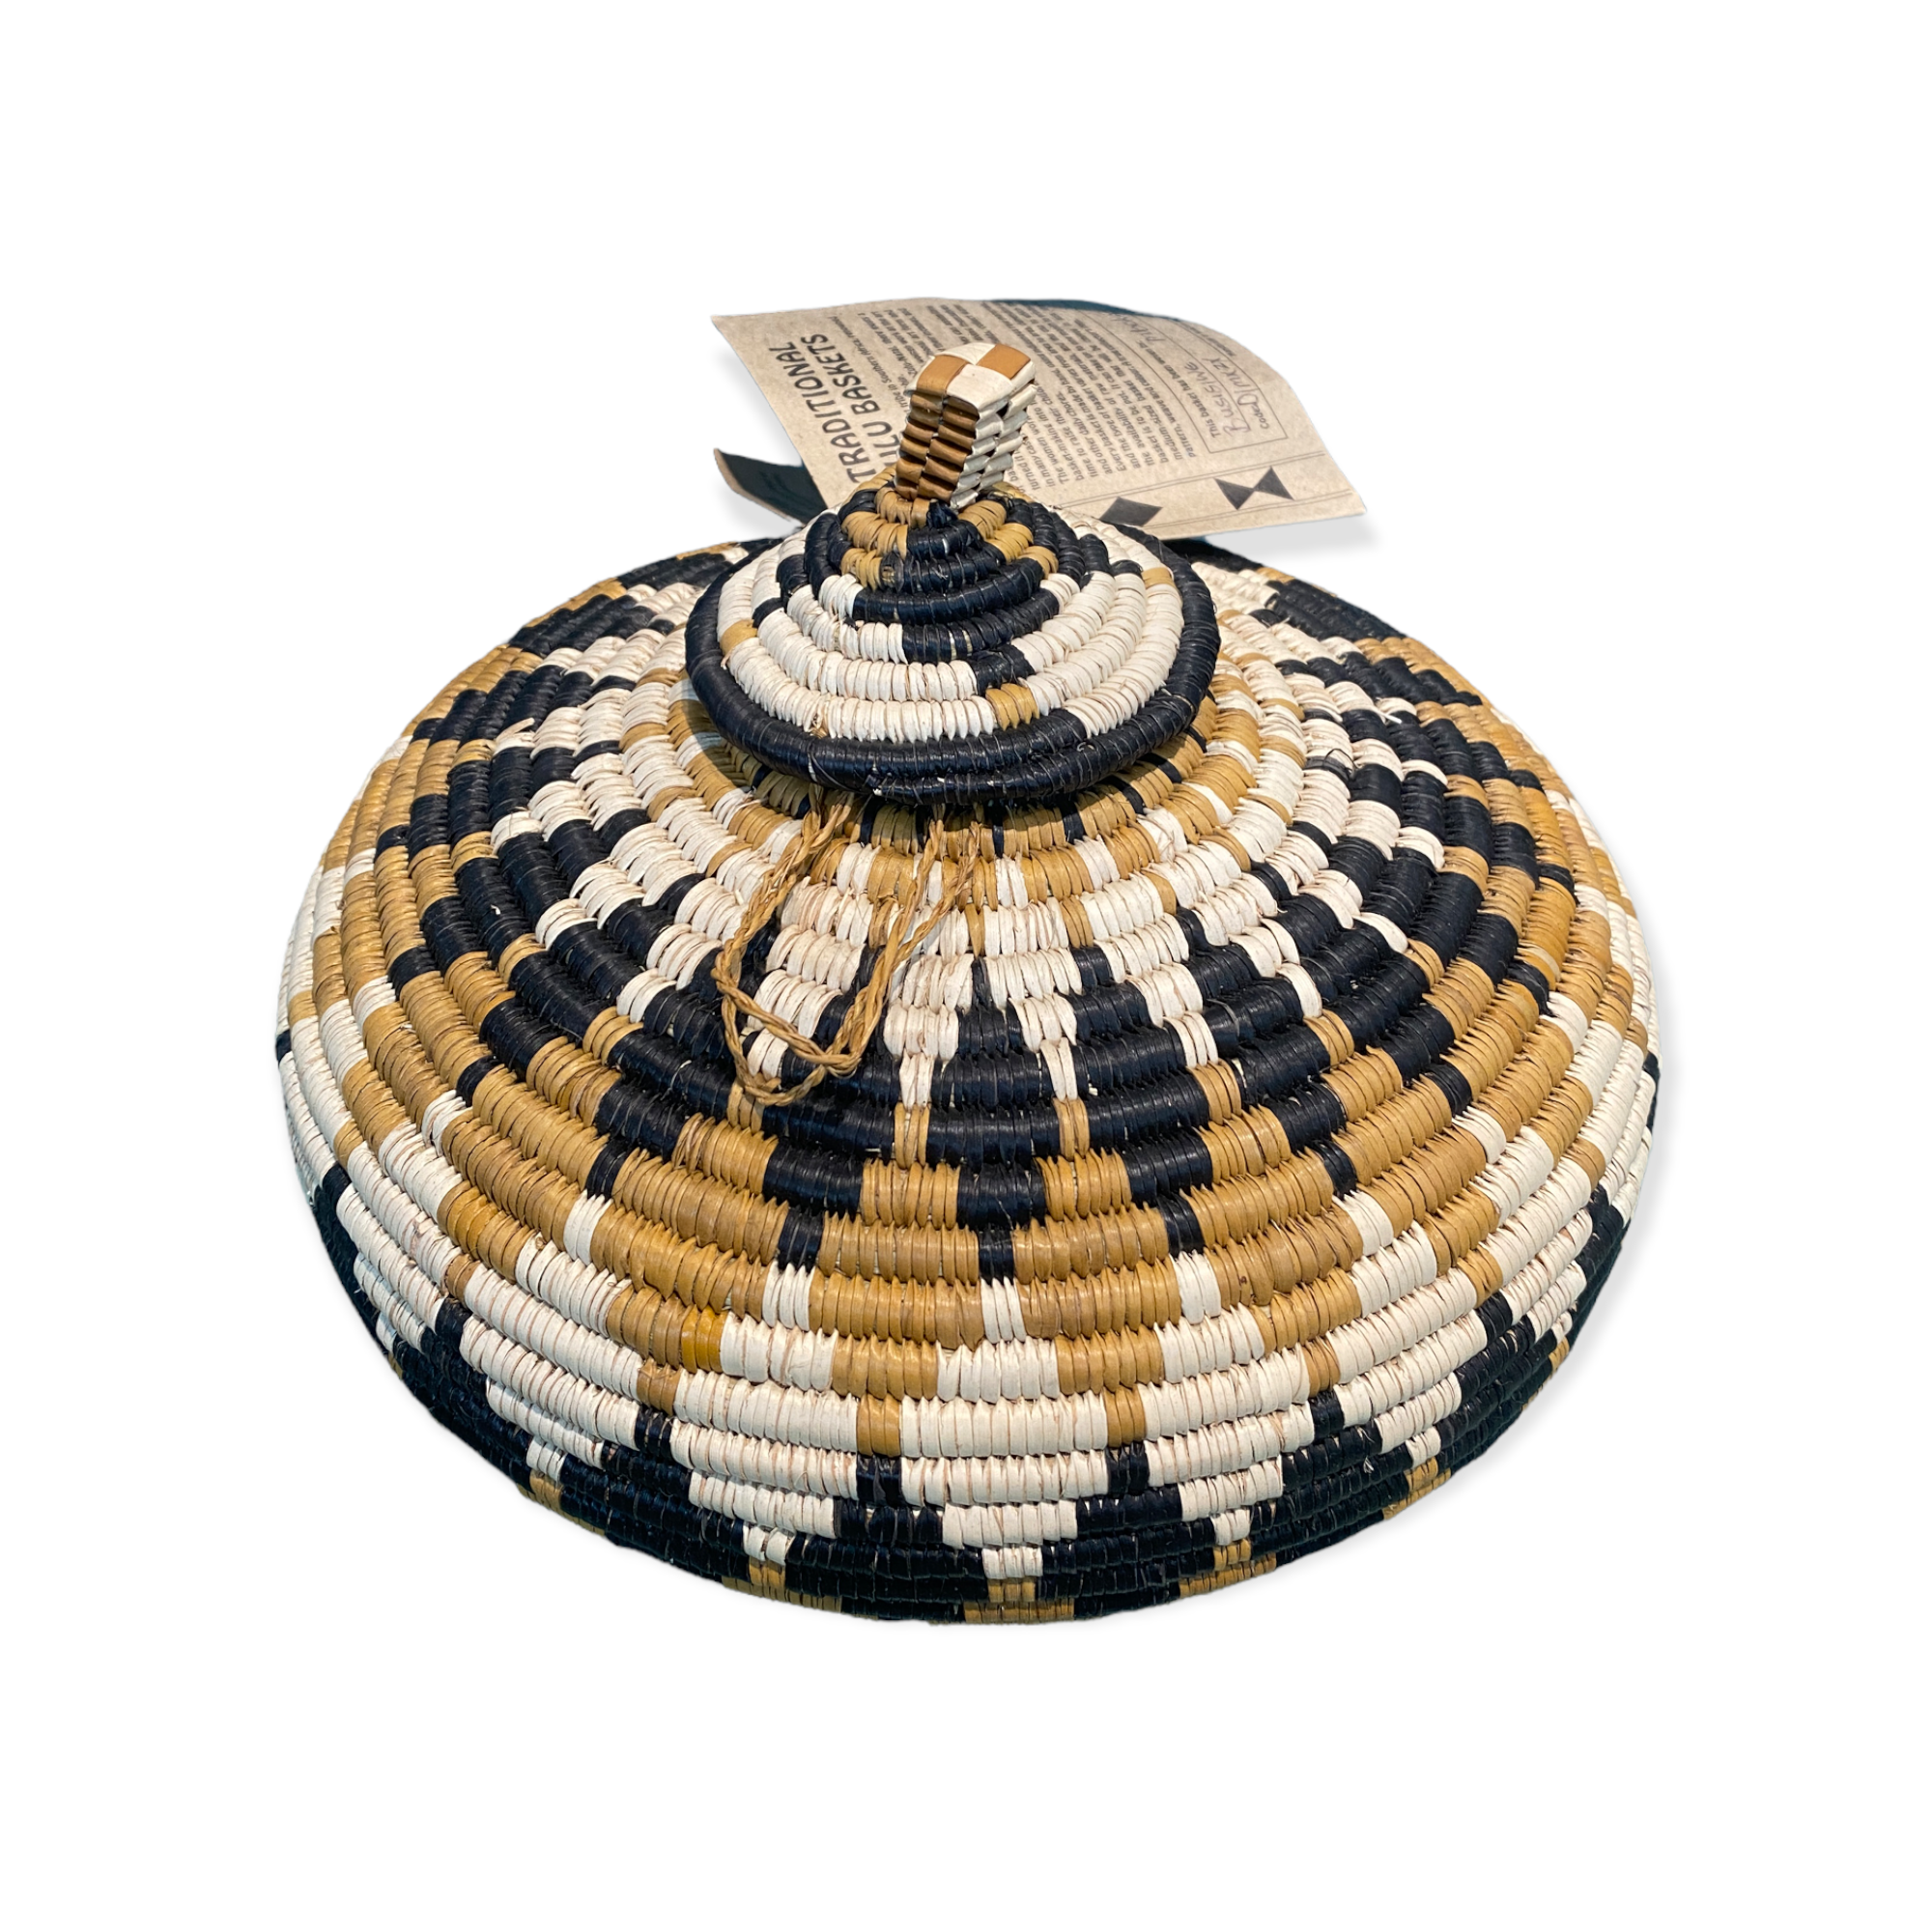 Zulu Ukhamba - traditional basket